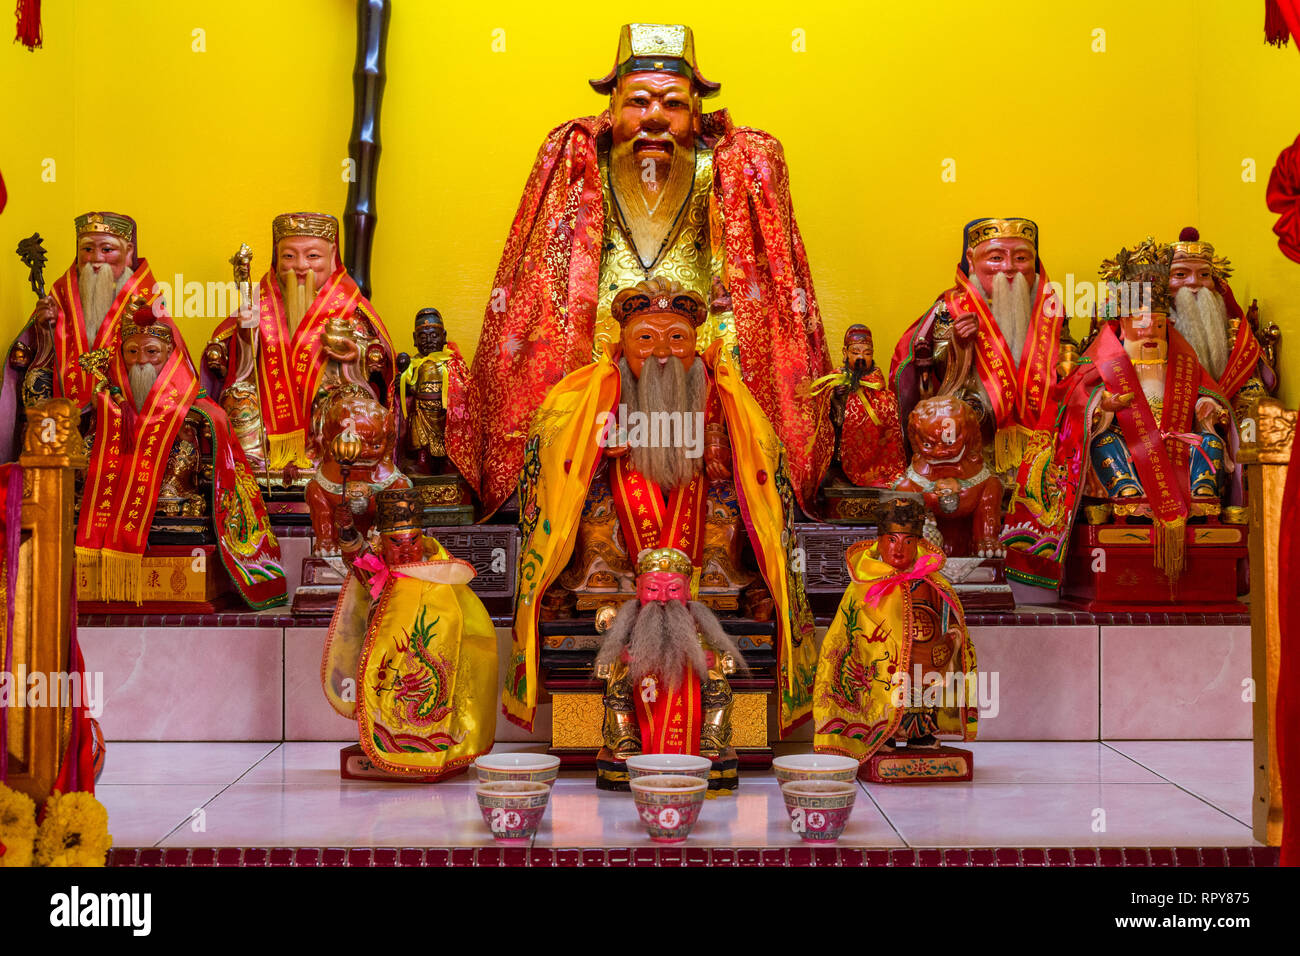 Sur l'autel des offrandes pour les divinités dans le Duo San Temple chinois, Melaka, Malaisie. Banque D'Images